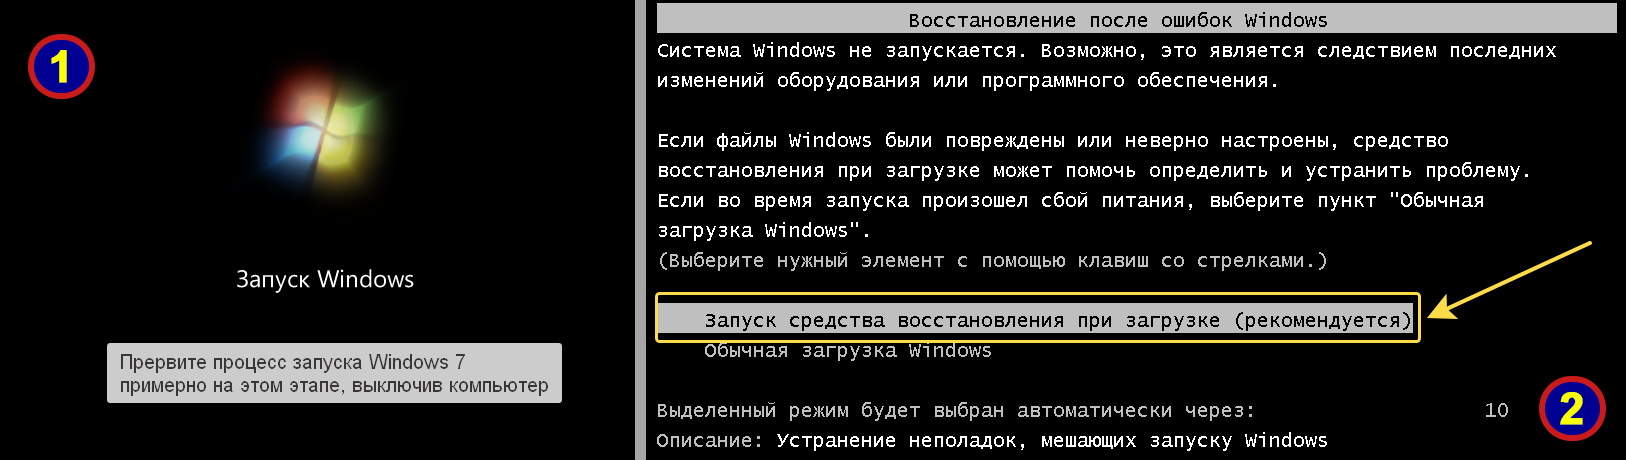 Окно запуска Windows 7, экран с выбором средства восстановления при загрузке.